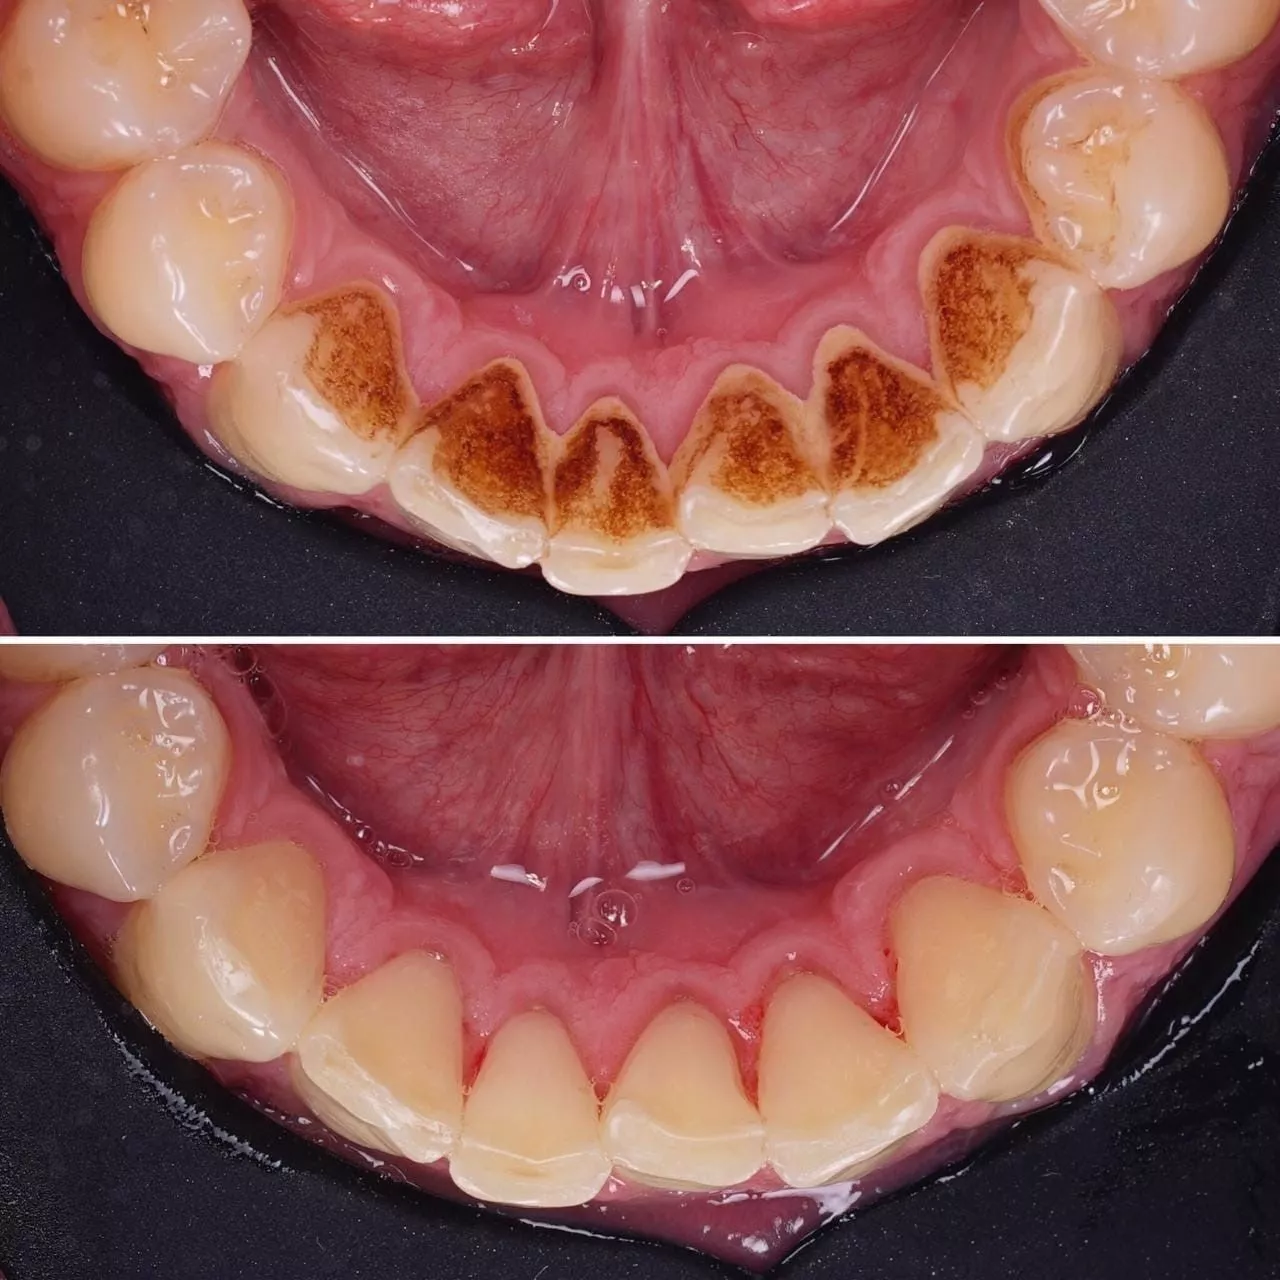 Поздние зубы у детей – проблема или норма?